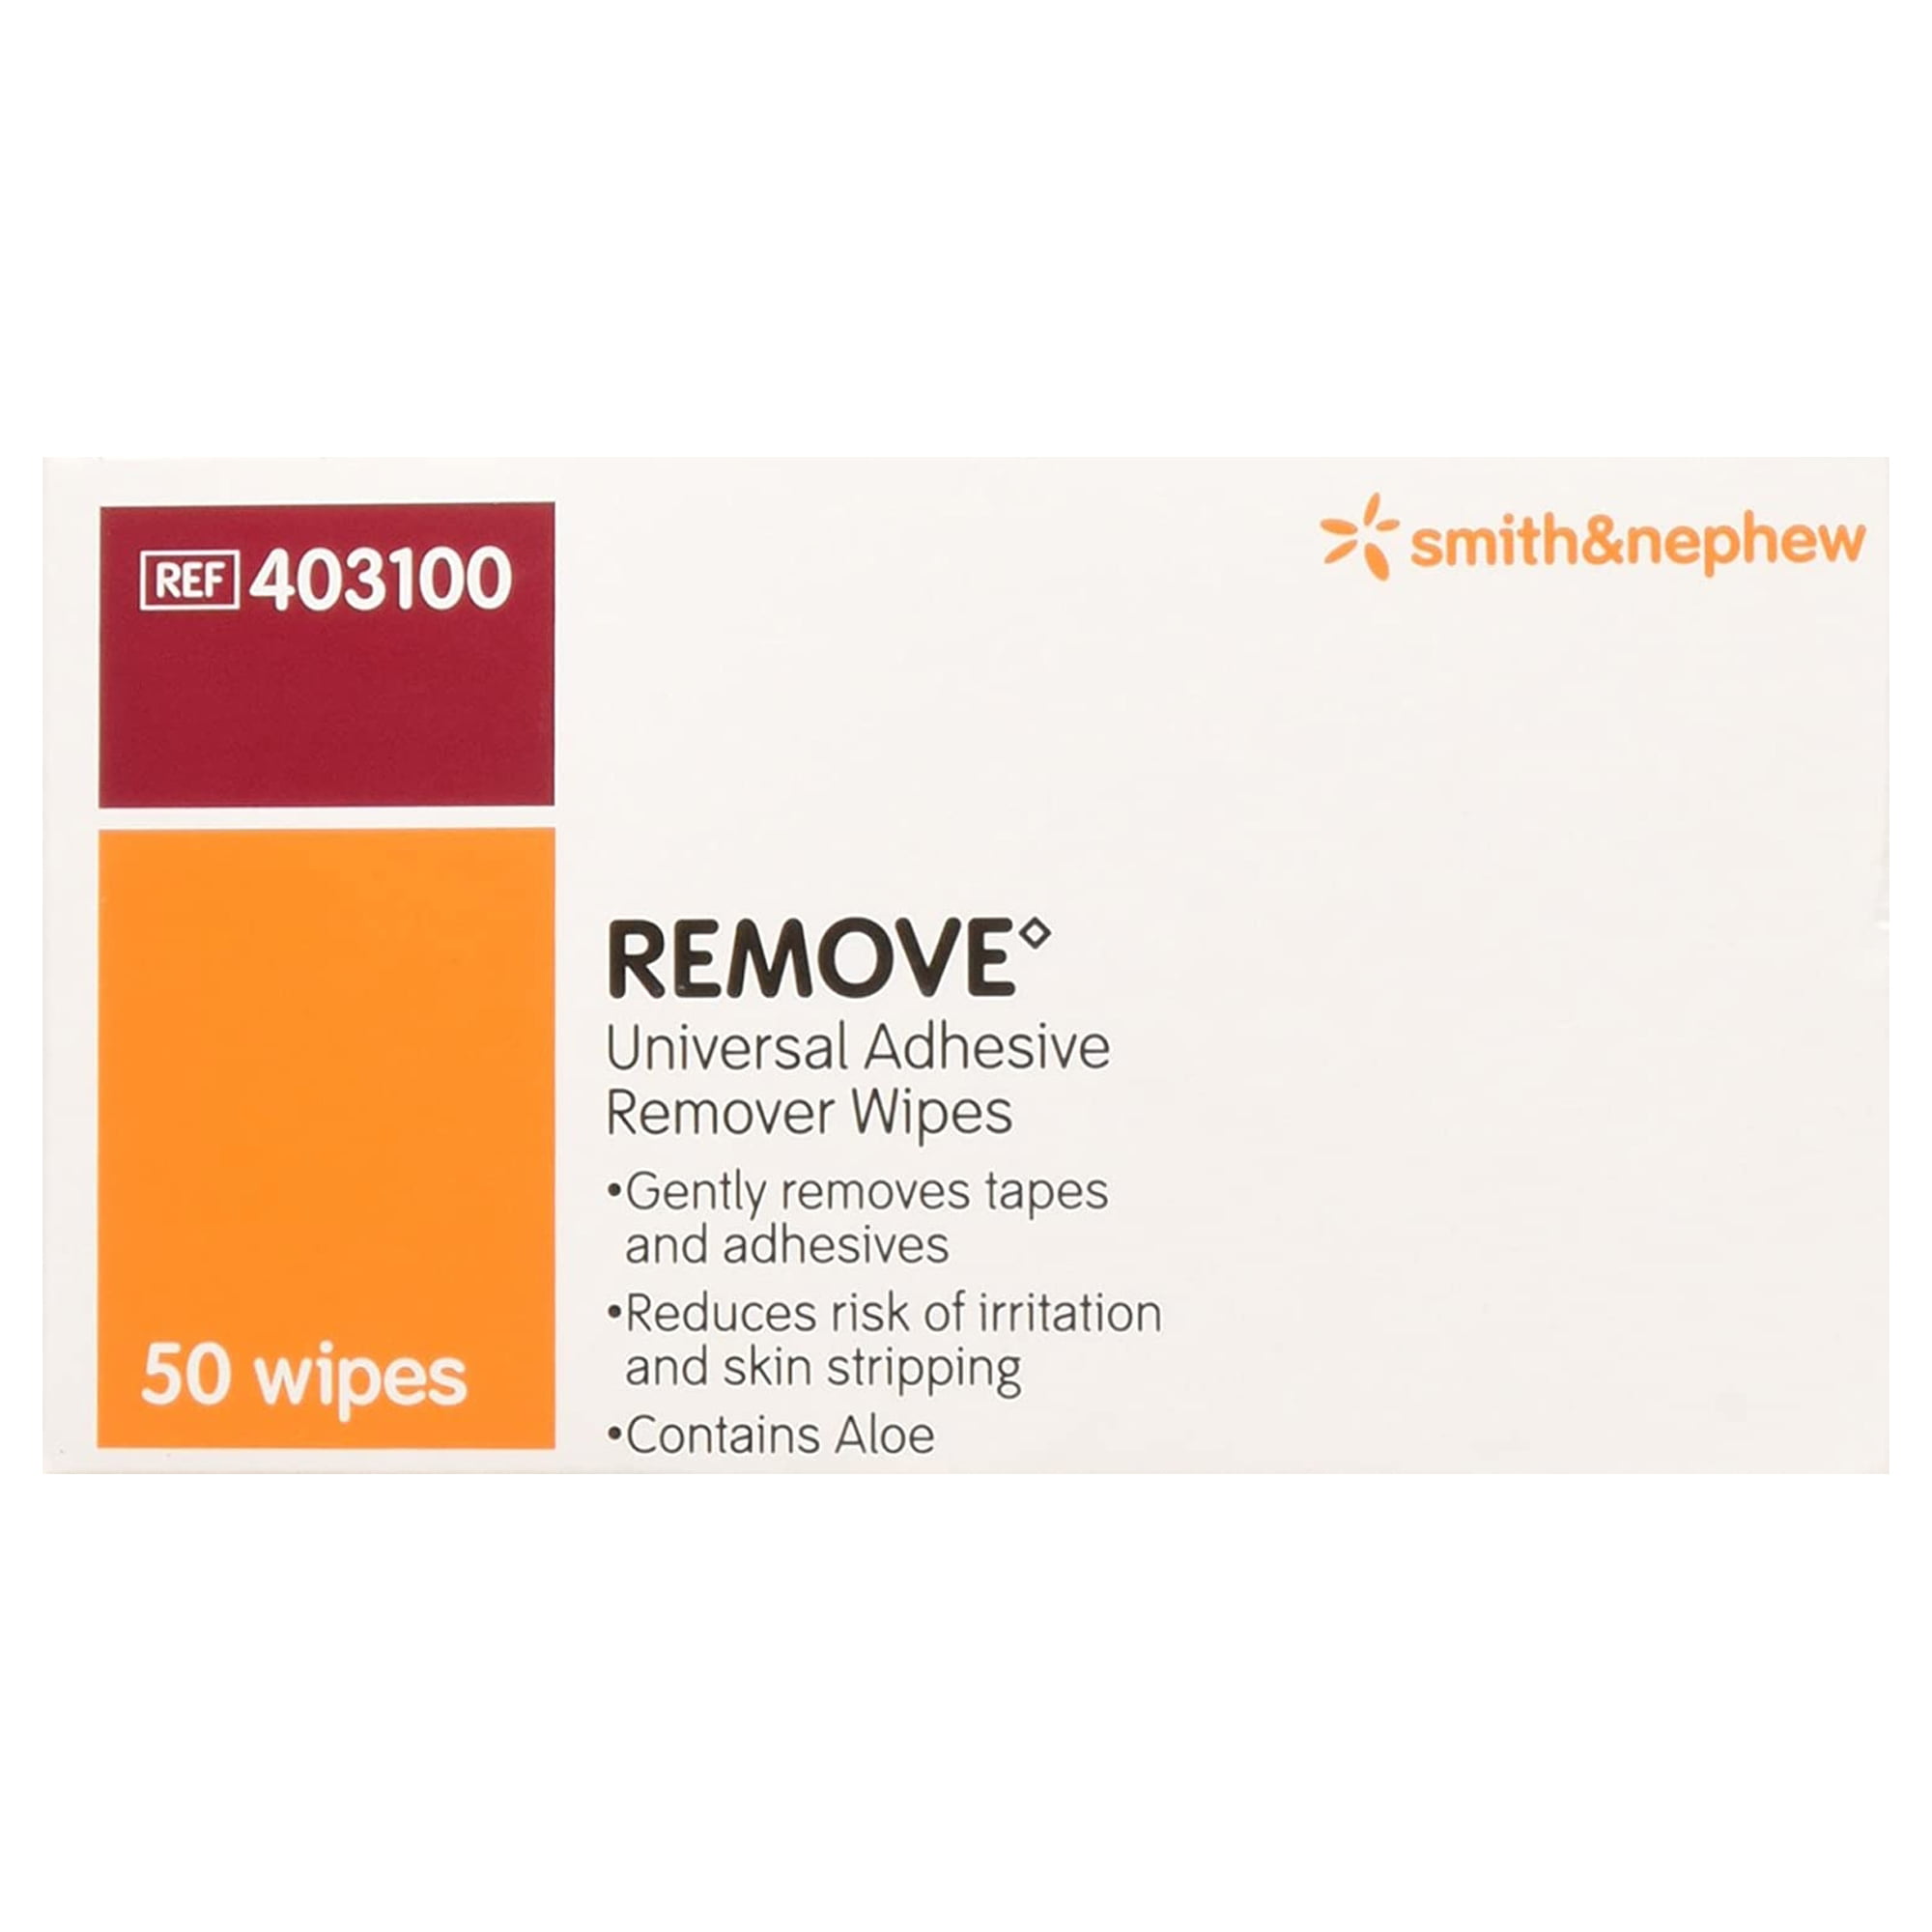 Remove Adhesive Remover Wipe 403100, 50 Ct 